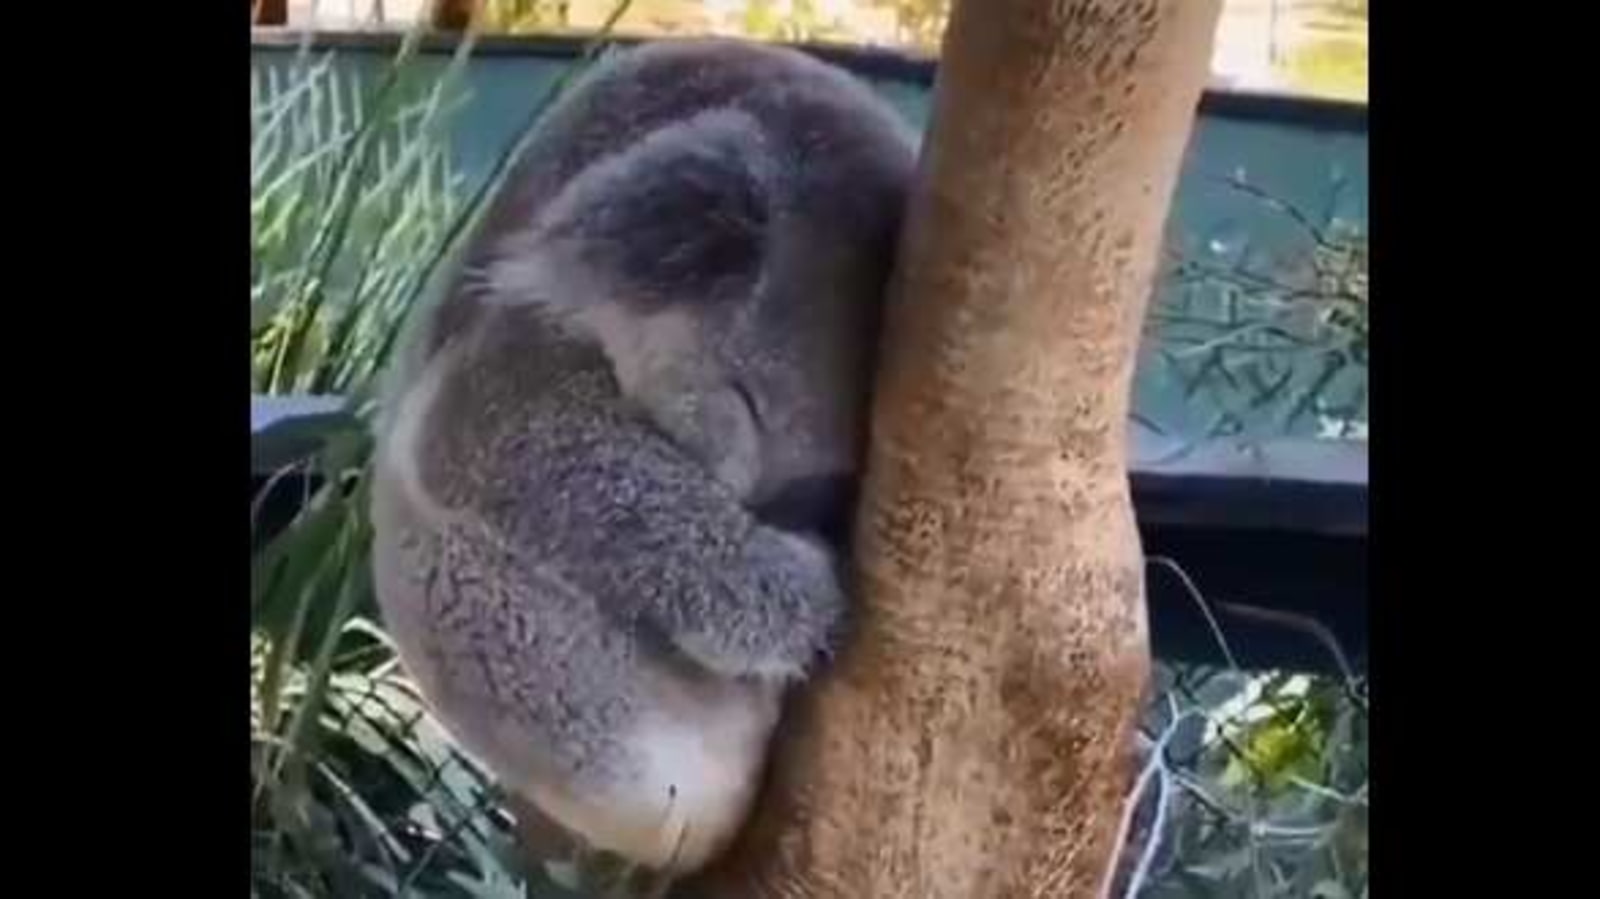 sleepy baby koala